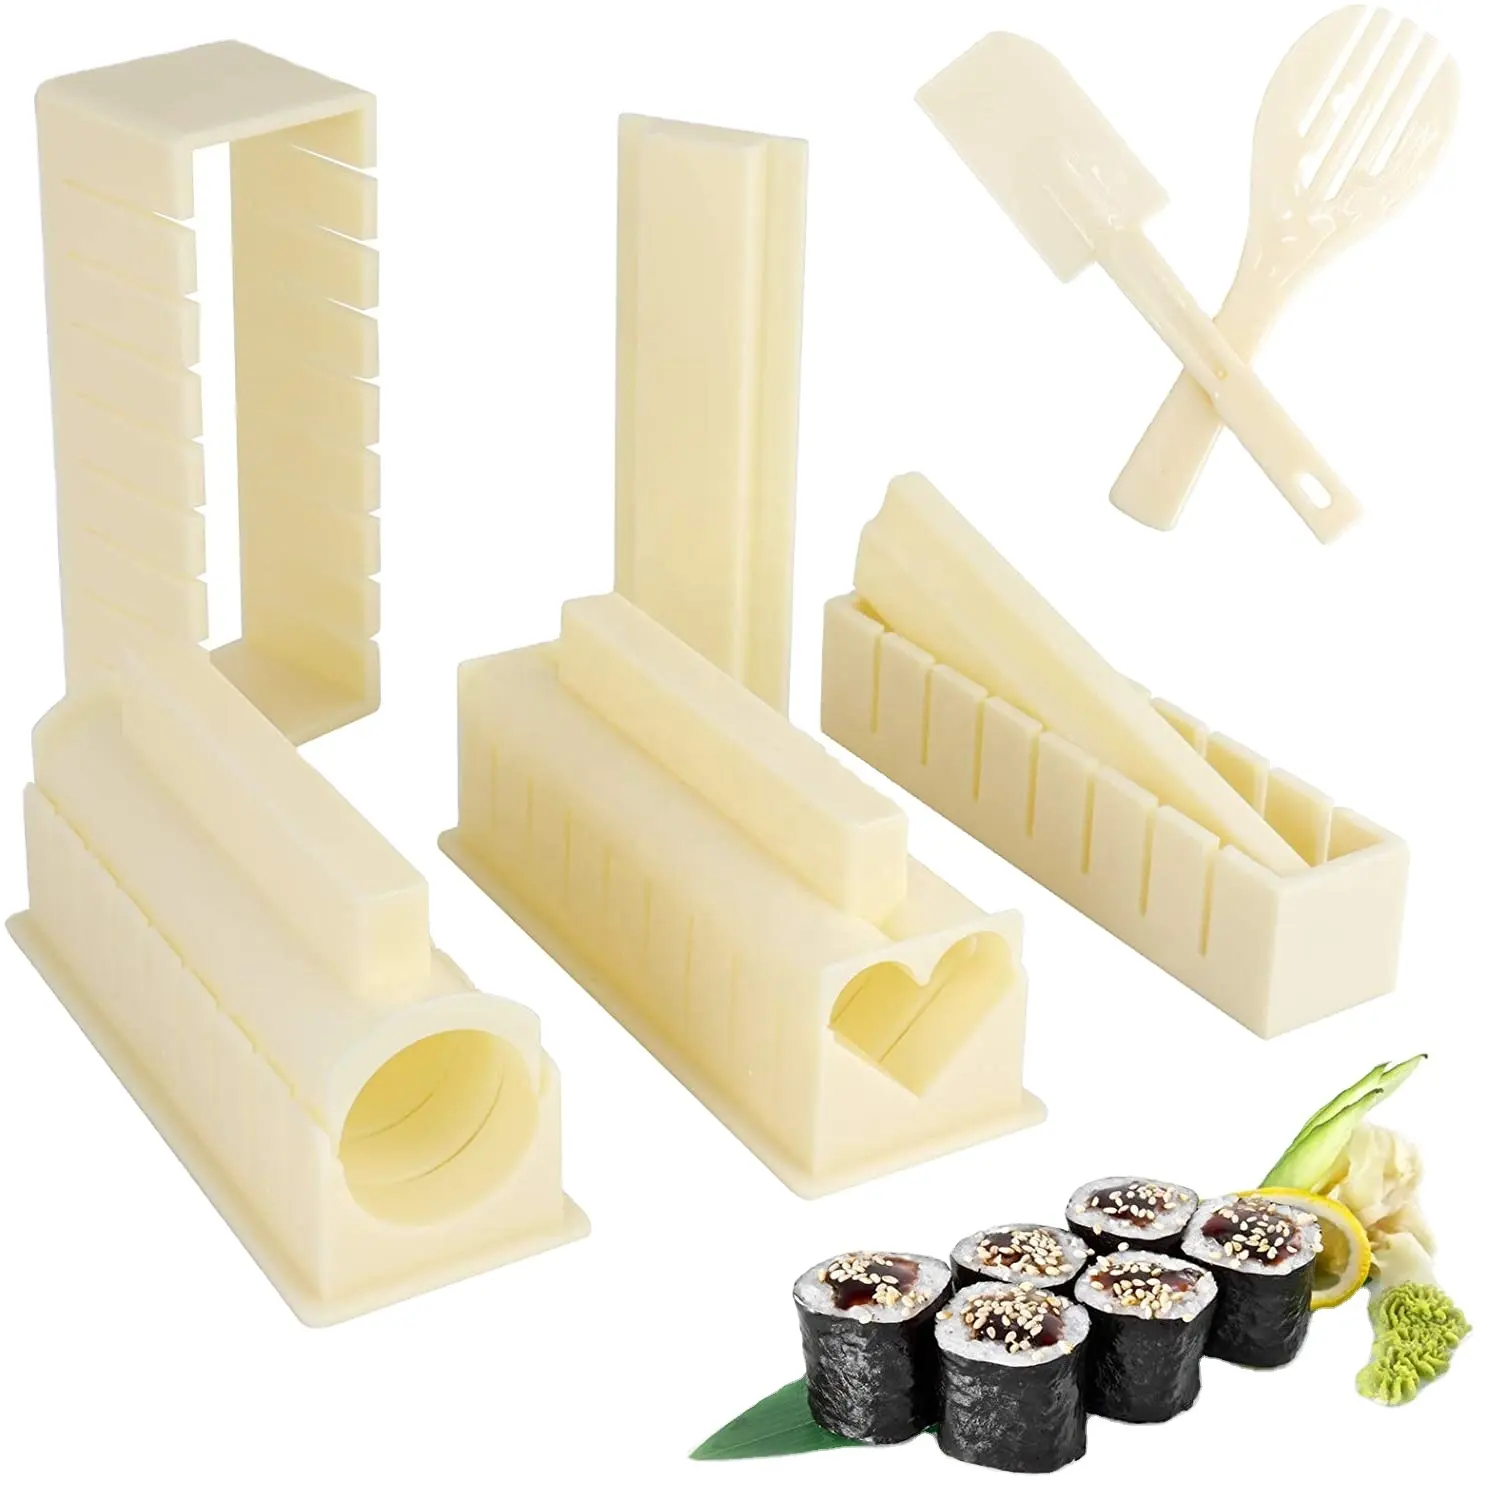 寿司作りキット10個プラスチック寿司ライスロールモールドメーカーキットホームキッチン寿司初心者のためのDIYツール